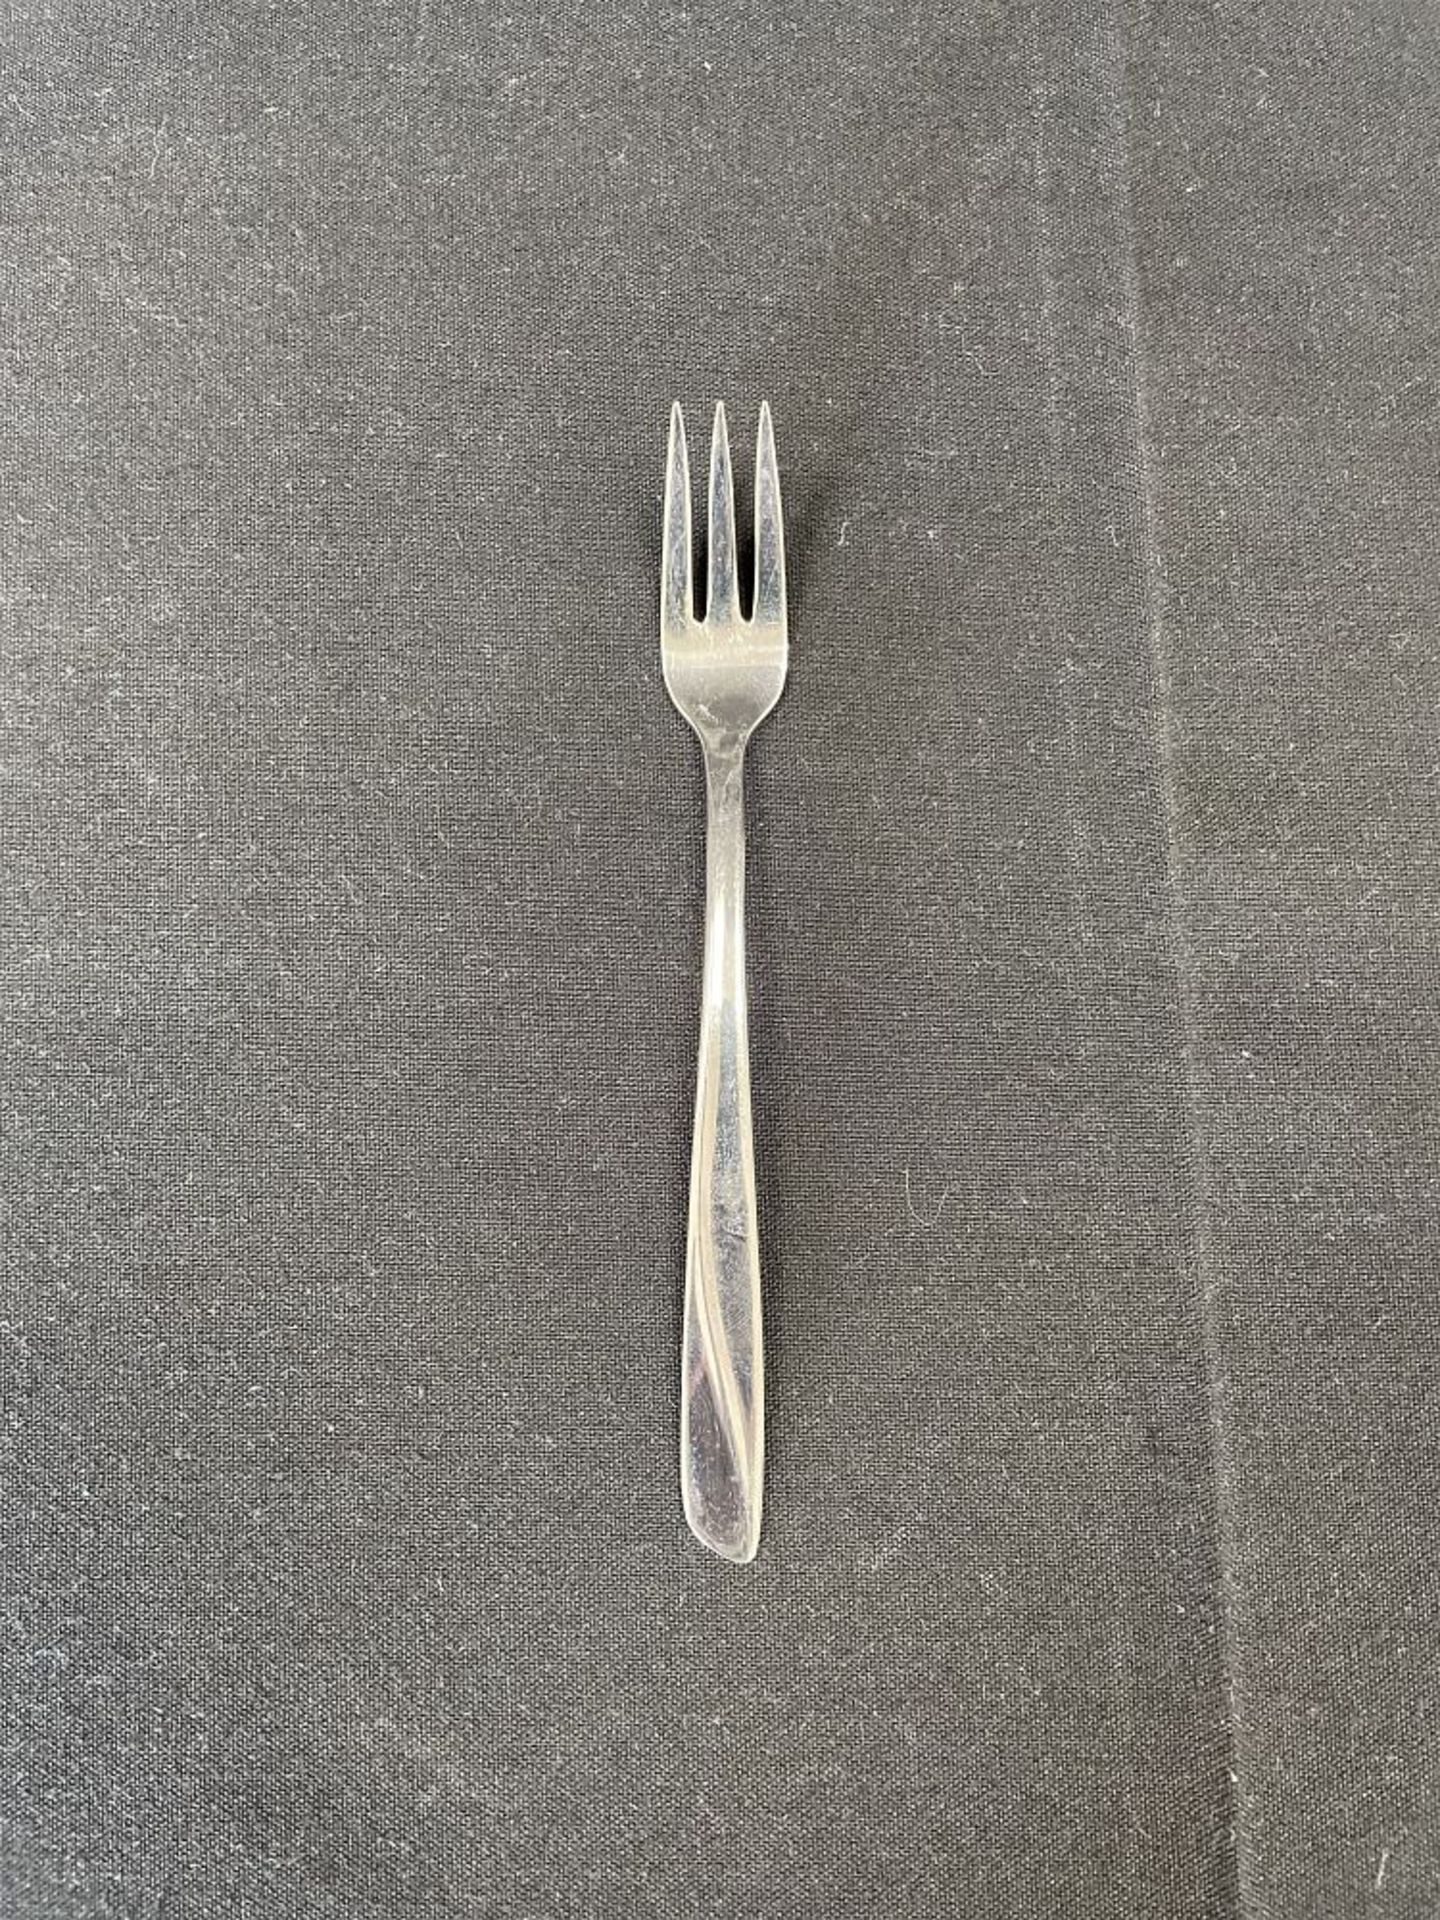 Cocktail Fork, plain